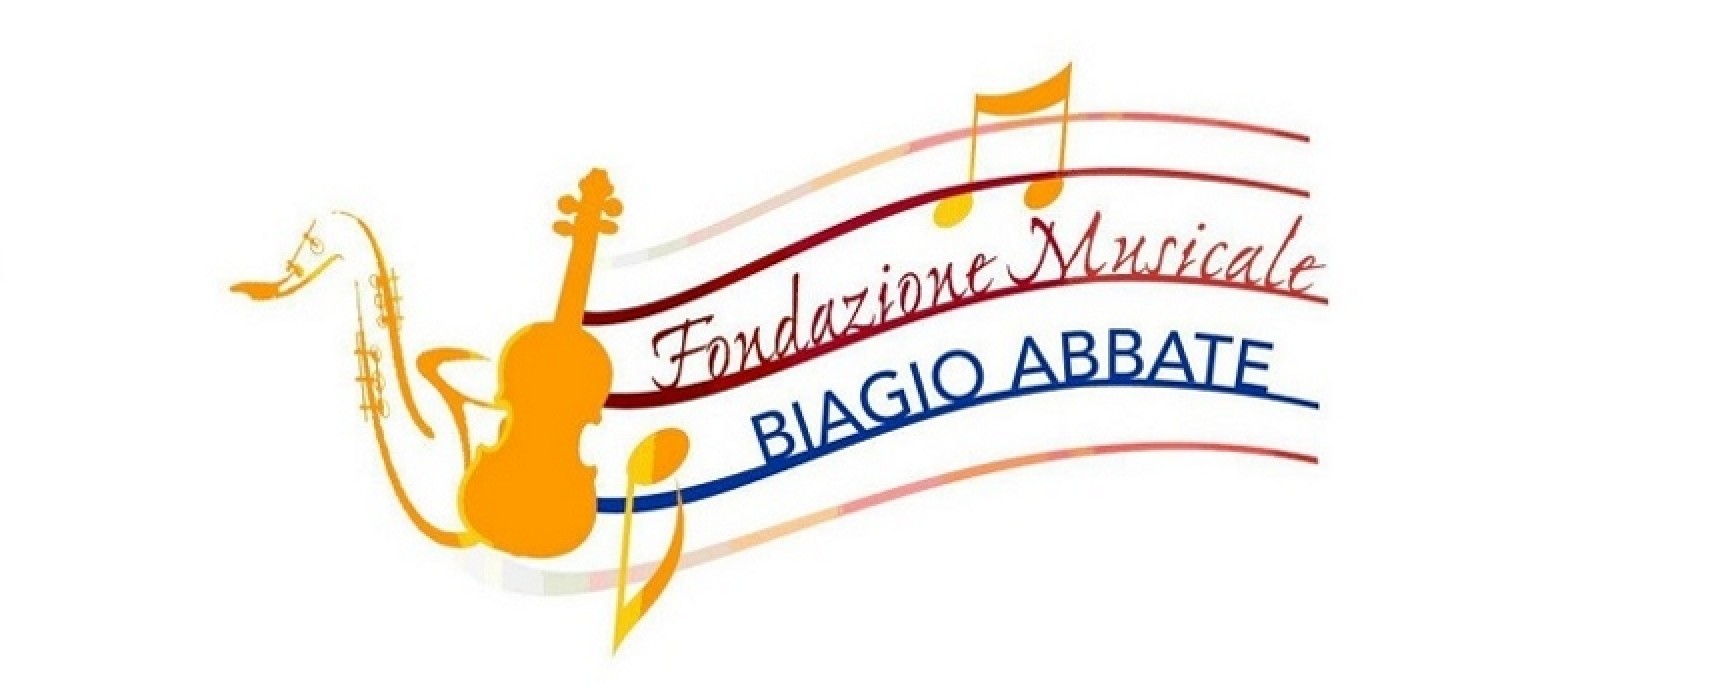 Fondazione Biagio Abbate, selezioni Orchestra Giovanile BAT / COME CANDIDARSI